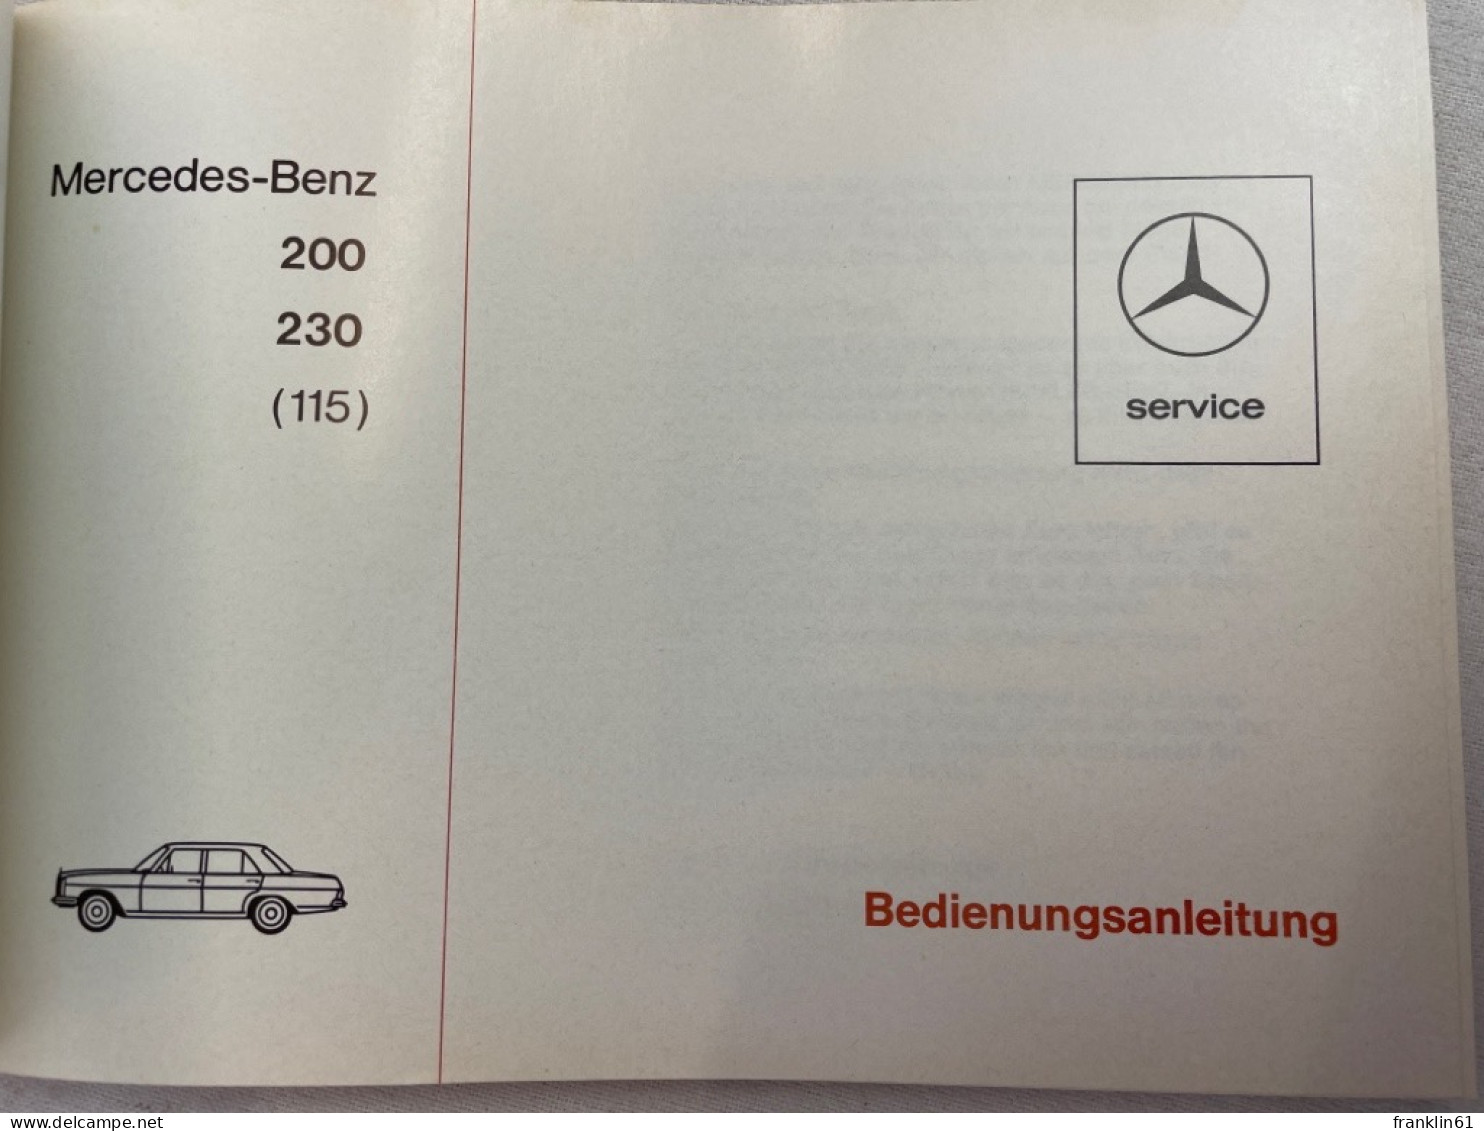 Bedienungsanleitung Mercedes-Benz 200, 230 (115). - Transporte